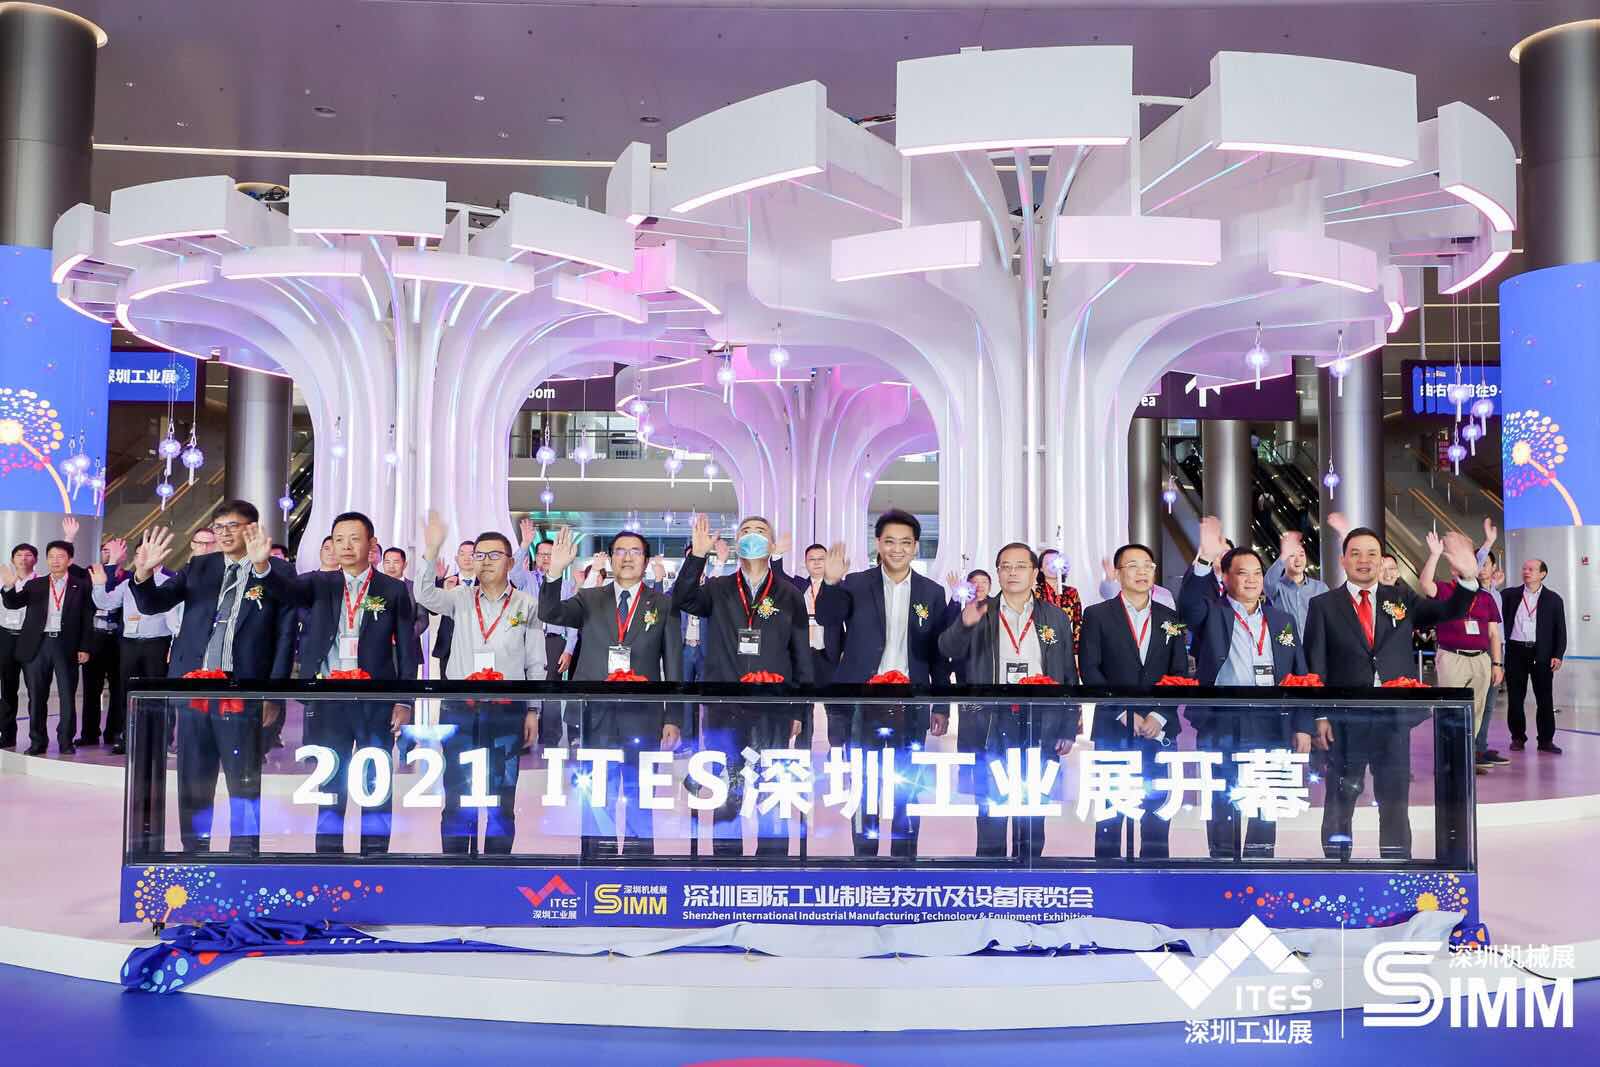 傳播制造思想，推動工業進步 | 2021 ITES深圳工業展今日啟幕